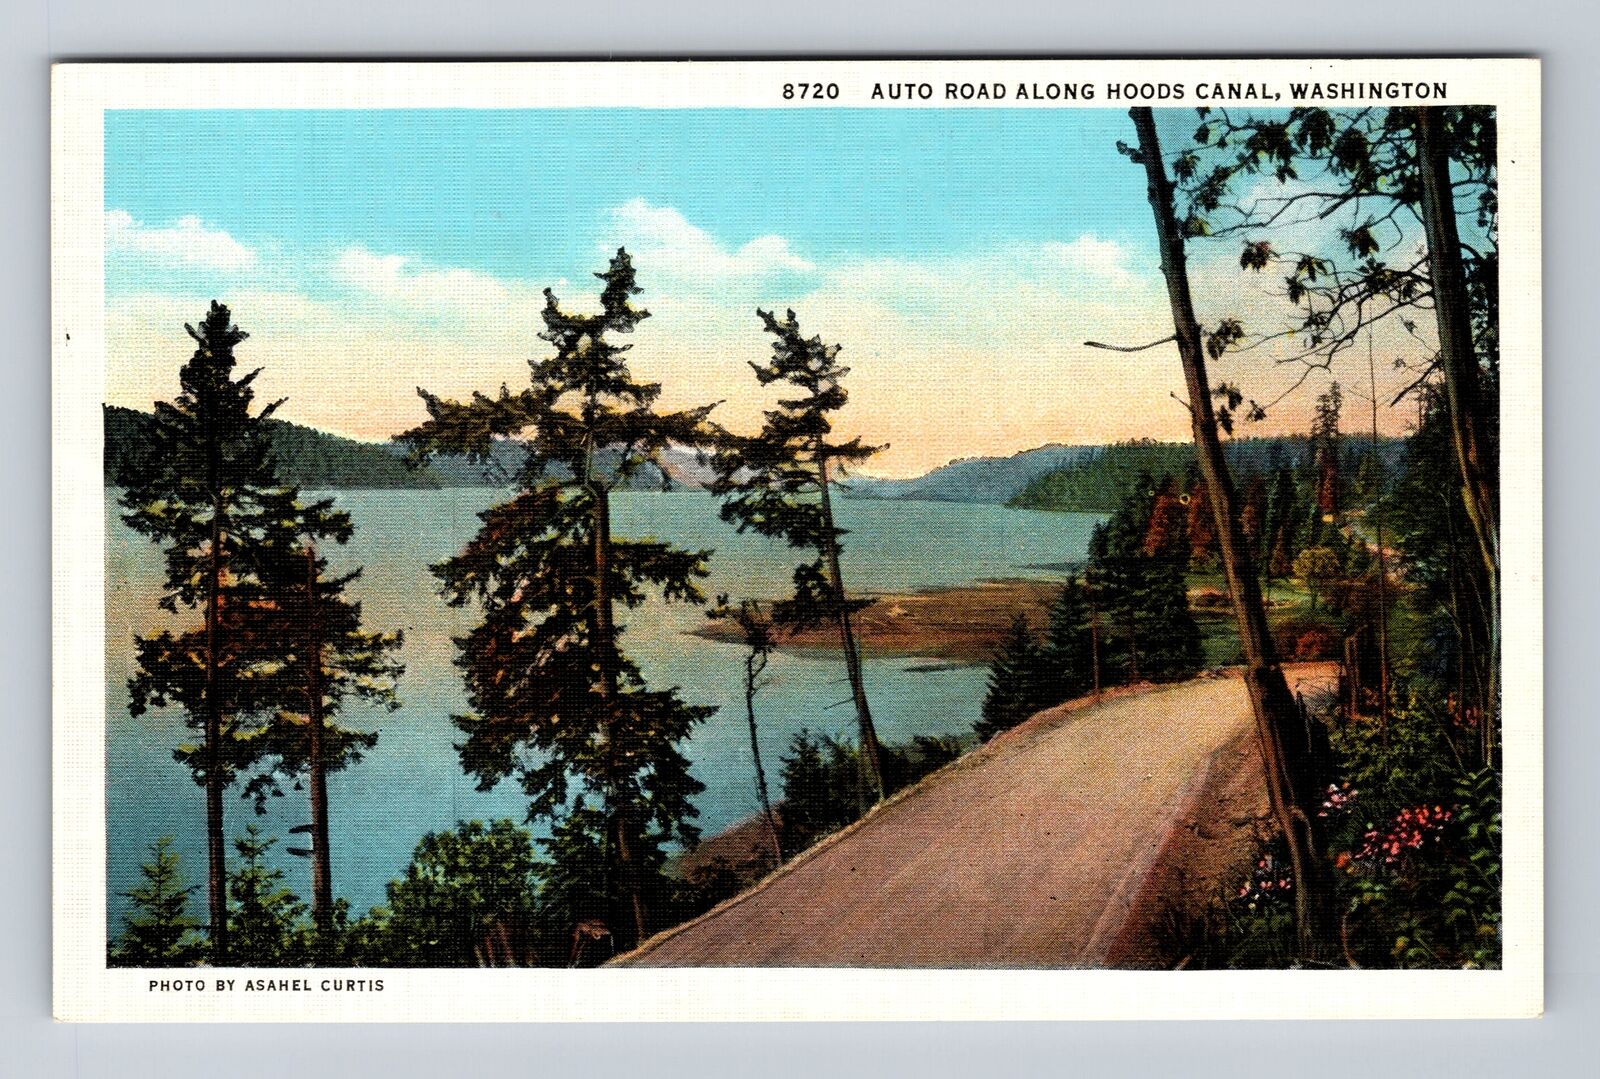 Hoods Canal WA-Washington, Auto Road Along Hoods Canal Vintage Postcard